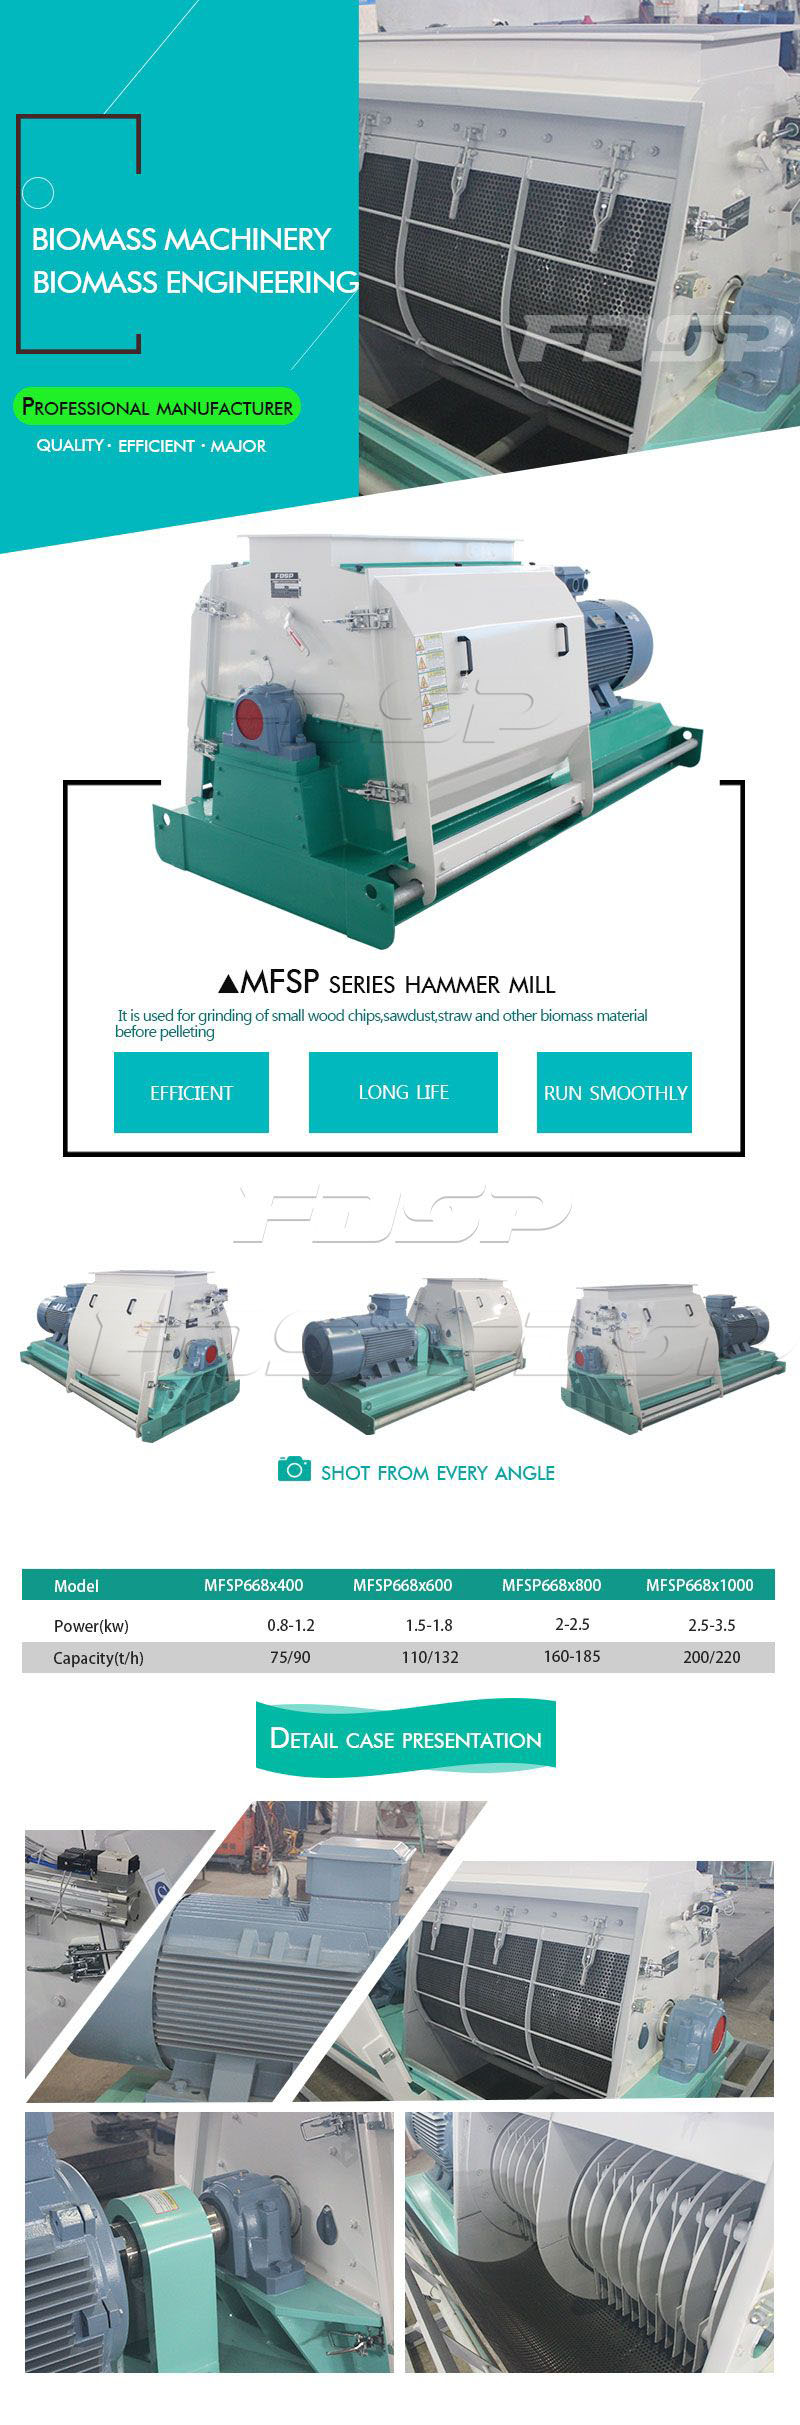 MFSP Series Hammer Mill